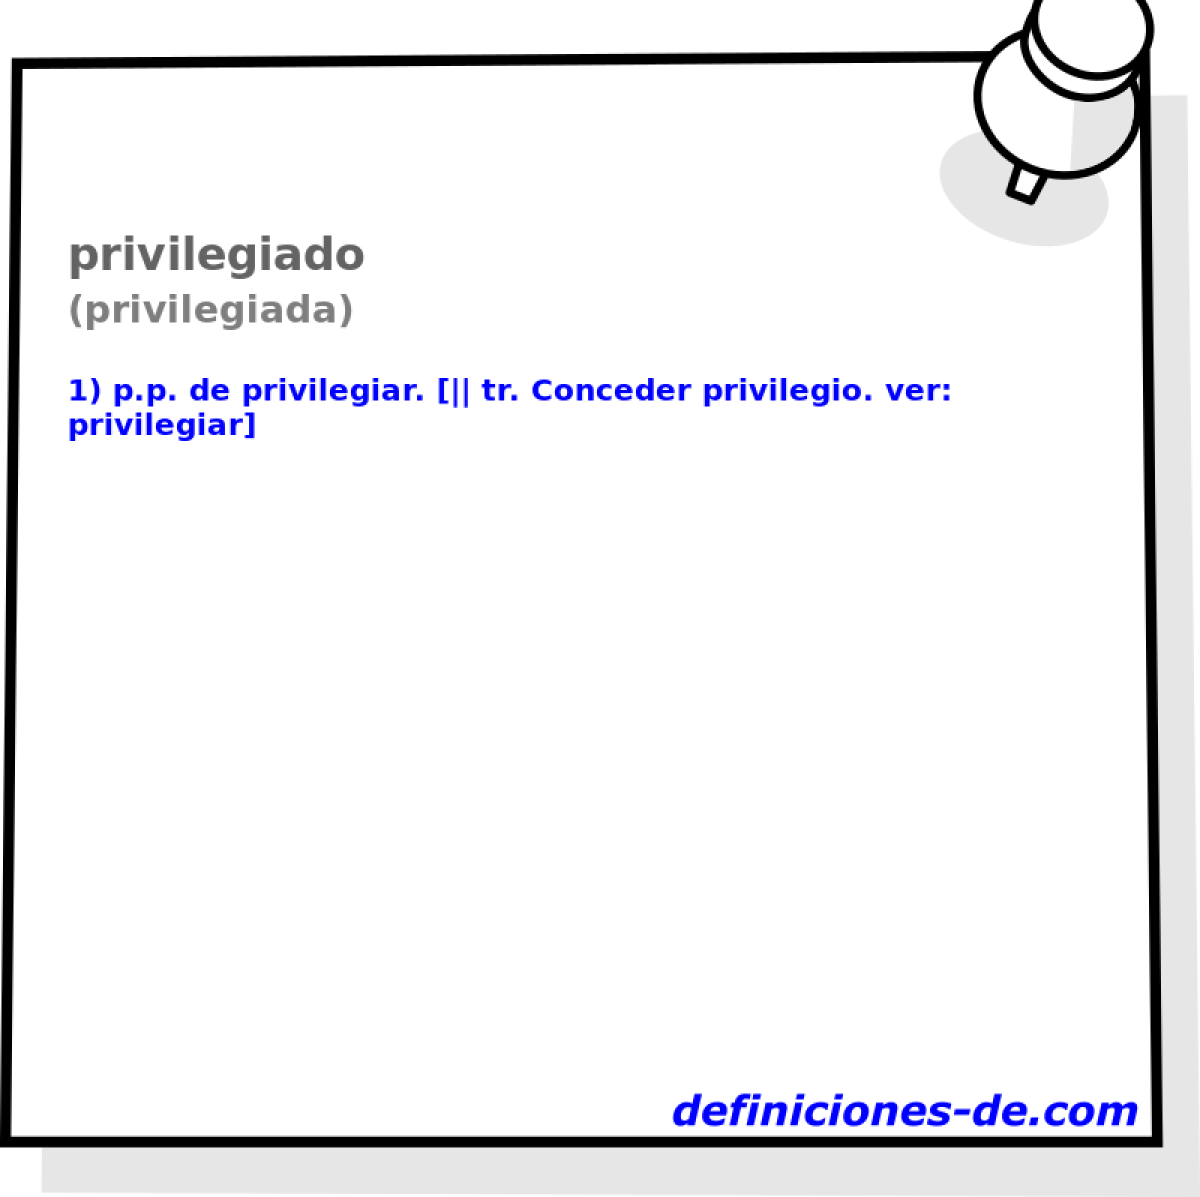 privilegiado (privilegiada)